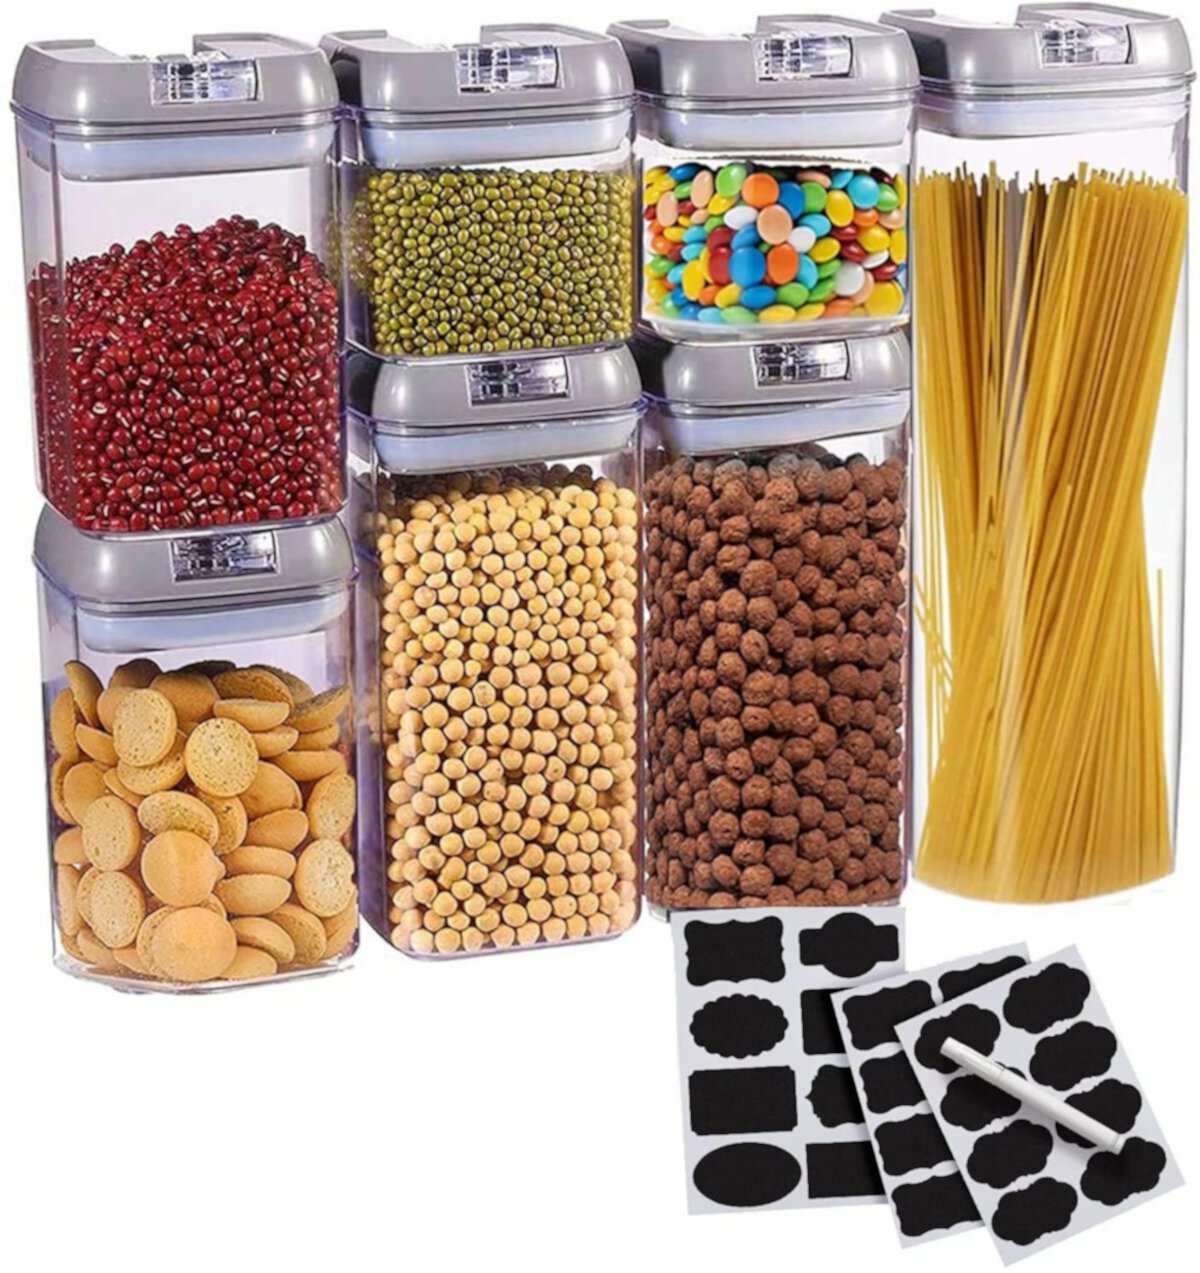 Набор для сбора Cheer, состоящий из 7 герметичных контейнеров для хранения продуктов — сверхпрочные контейнеры-органайзеры для кладовой, пластиковые контейнеры без BPA, а также сухостираемый маркер и этикетки, серый цвет Cheer Collection